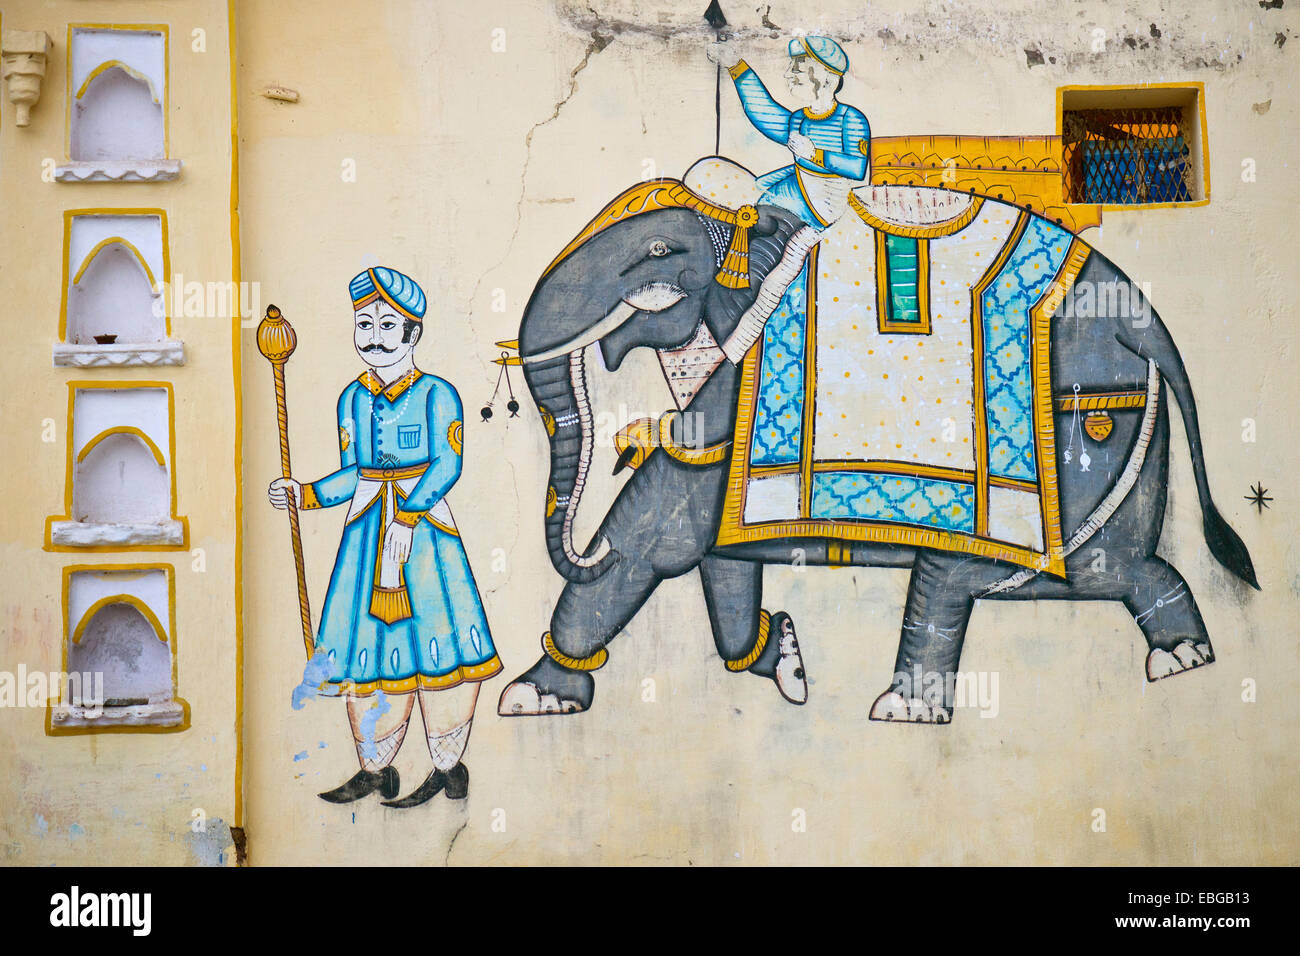 Wandbild an einer Hauswand, Elefant mit Mahout und Palast Diener, Bassi, Rajasthan, Indien Stockfoto